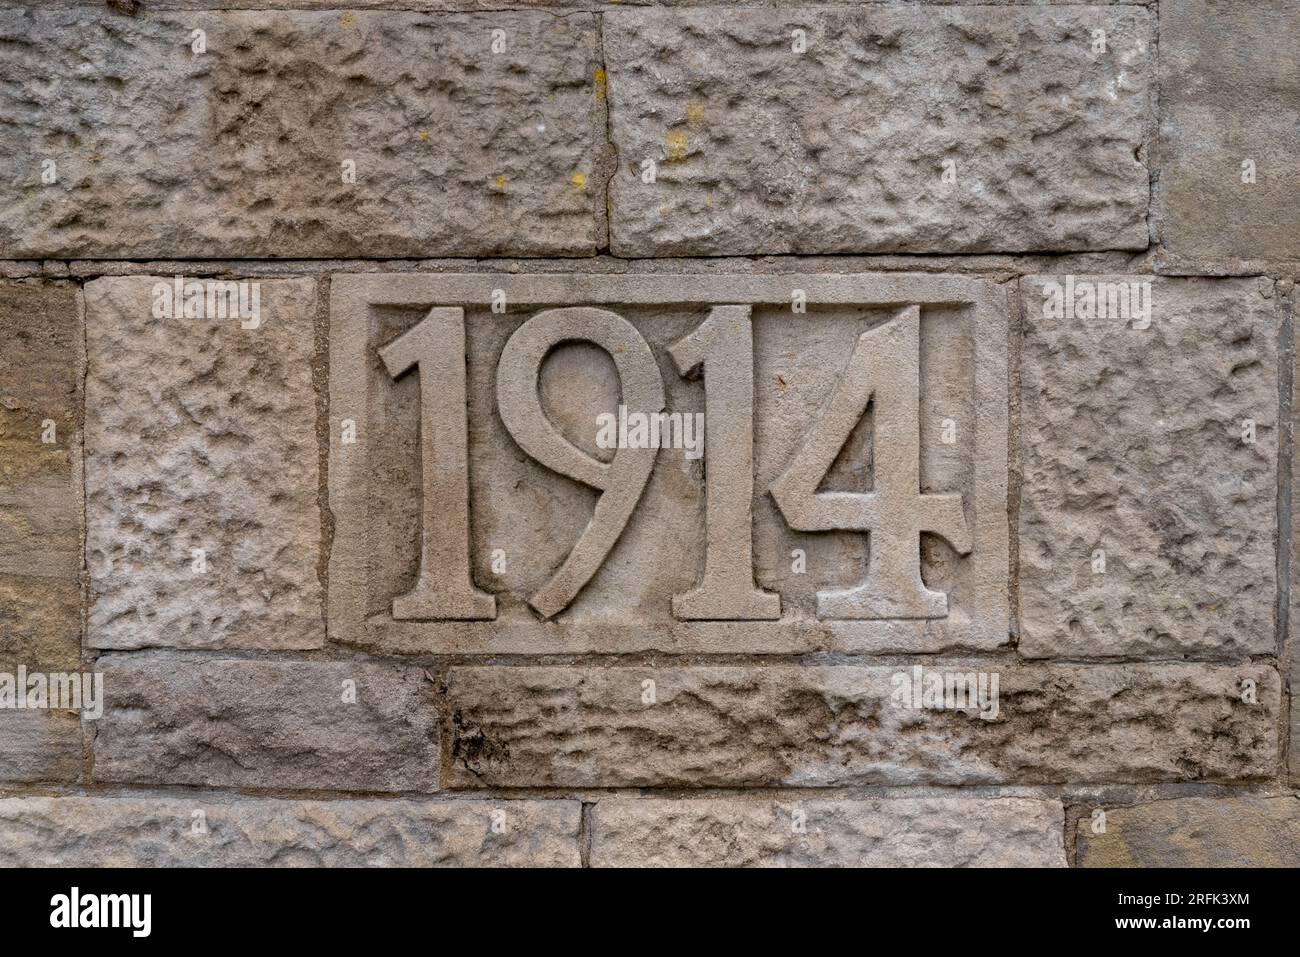 Die Zahl neunzehn vierzehn, die in Stein gemeißelt wurde, könnte eine Hausnummer oder der Beginn des Ersten Weltkriegs sein. Stockfoto